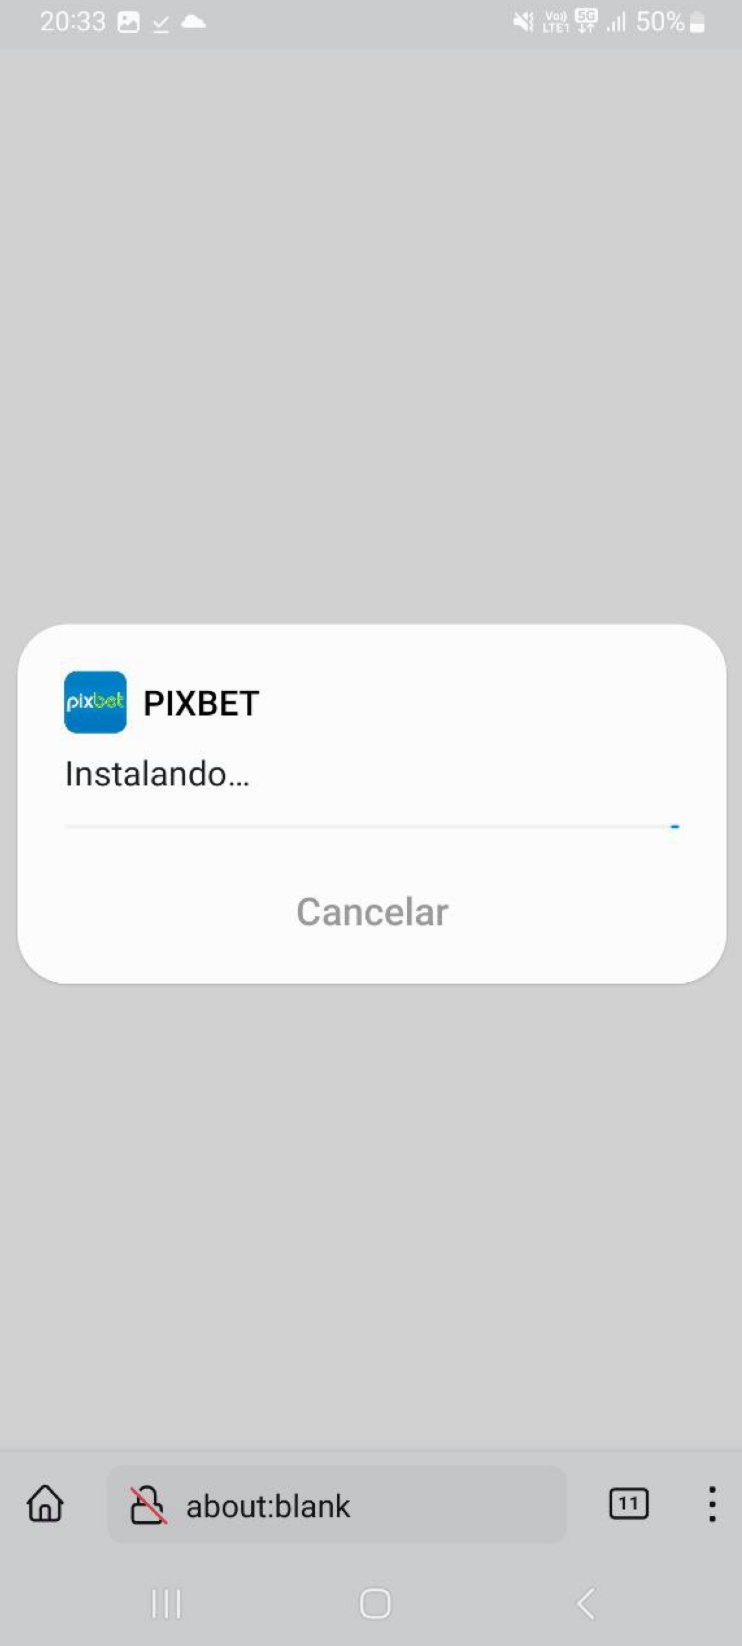 Ícone do Google Play no site Pixbet., Download do arquivo Pixbet .apk., Durante instalação da Pixbet App pode aparecer uma notificação de alerta., A instalação do App Pixbet.